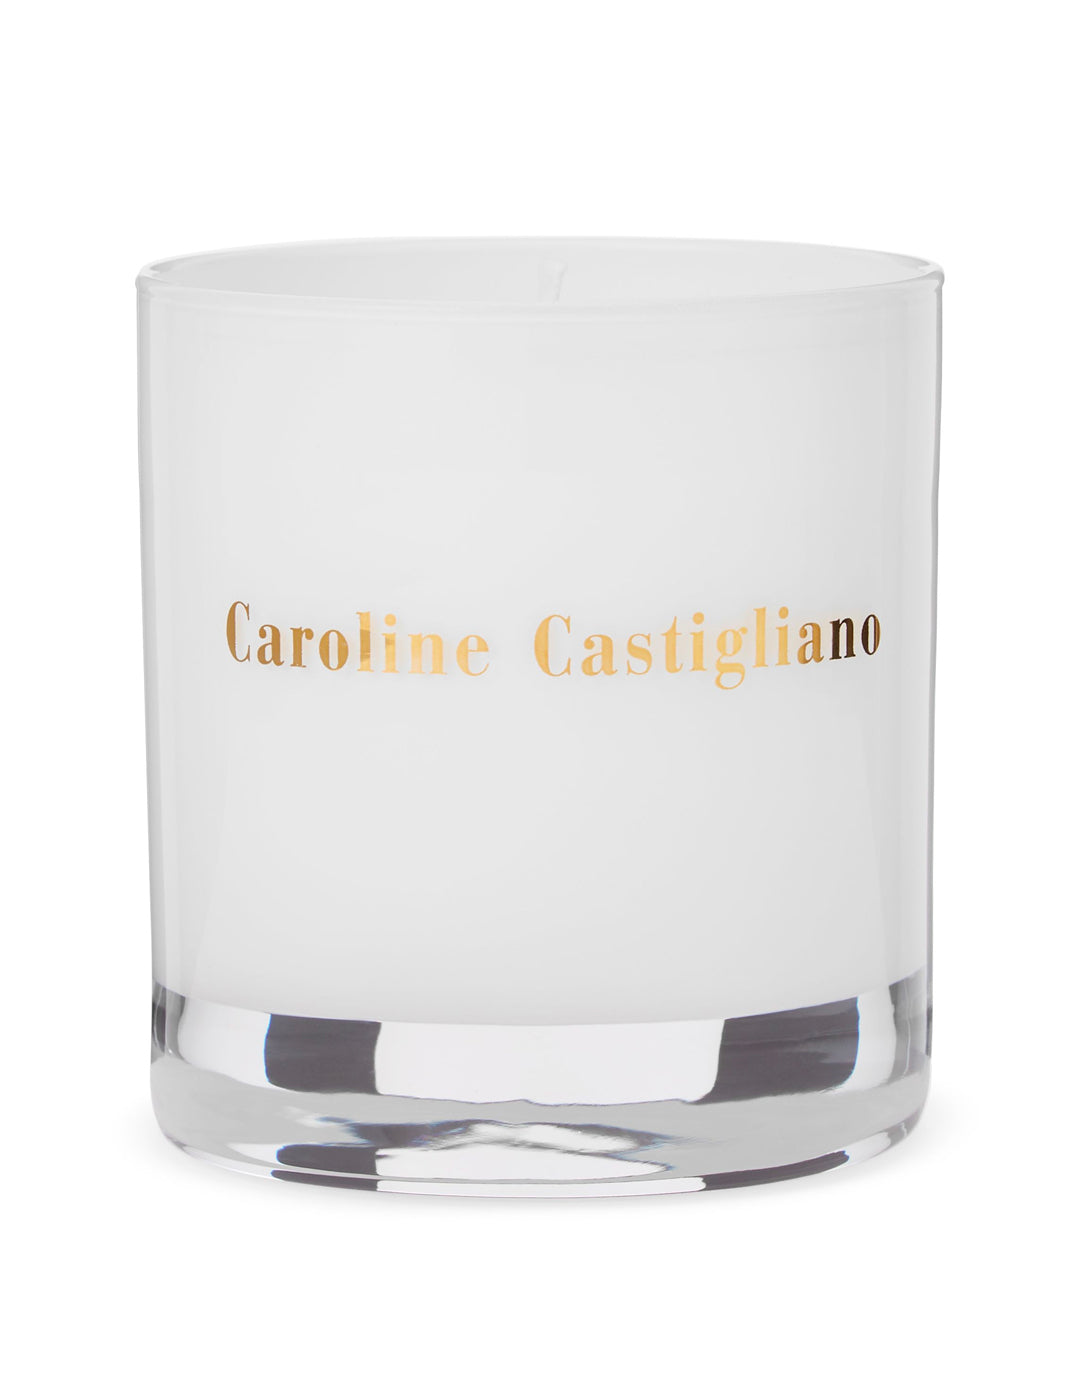 White Tea and Wisteria Scented Candle - Caroline Castigliano